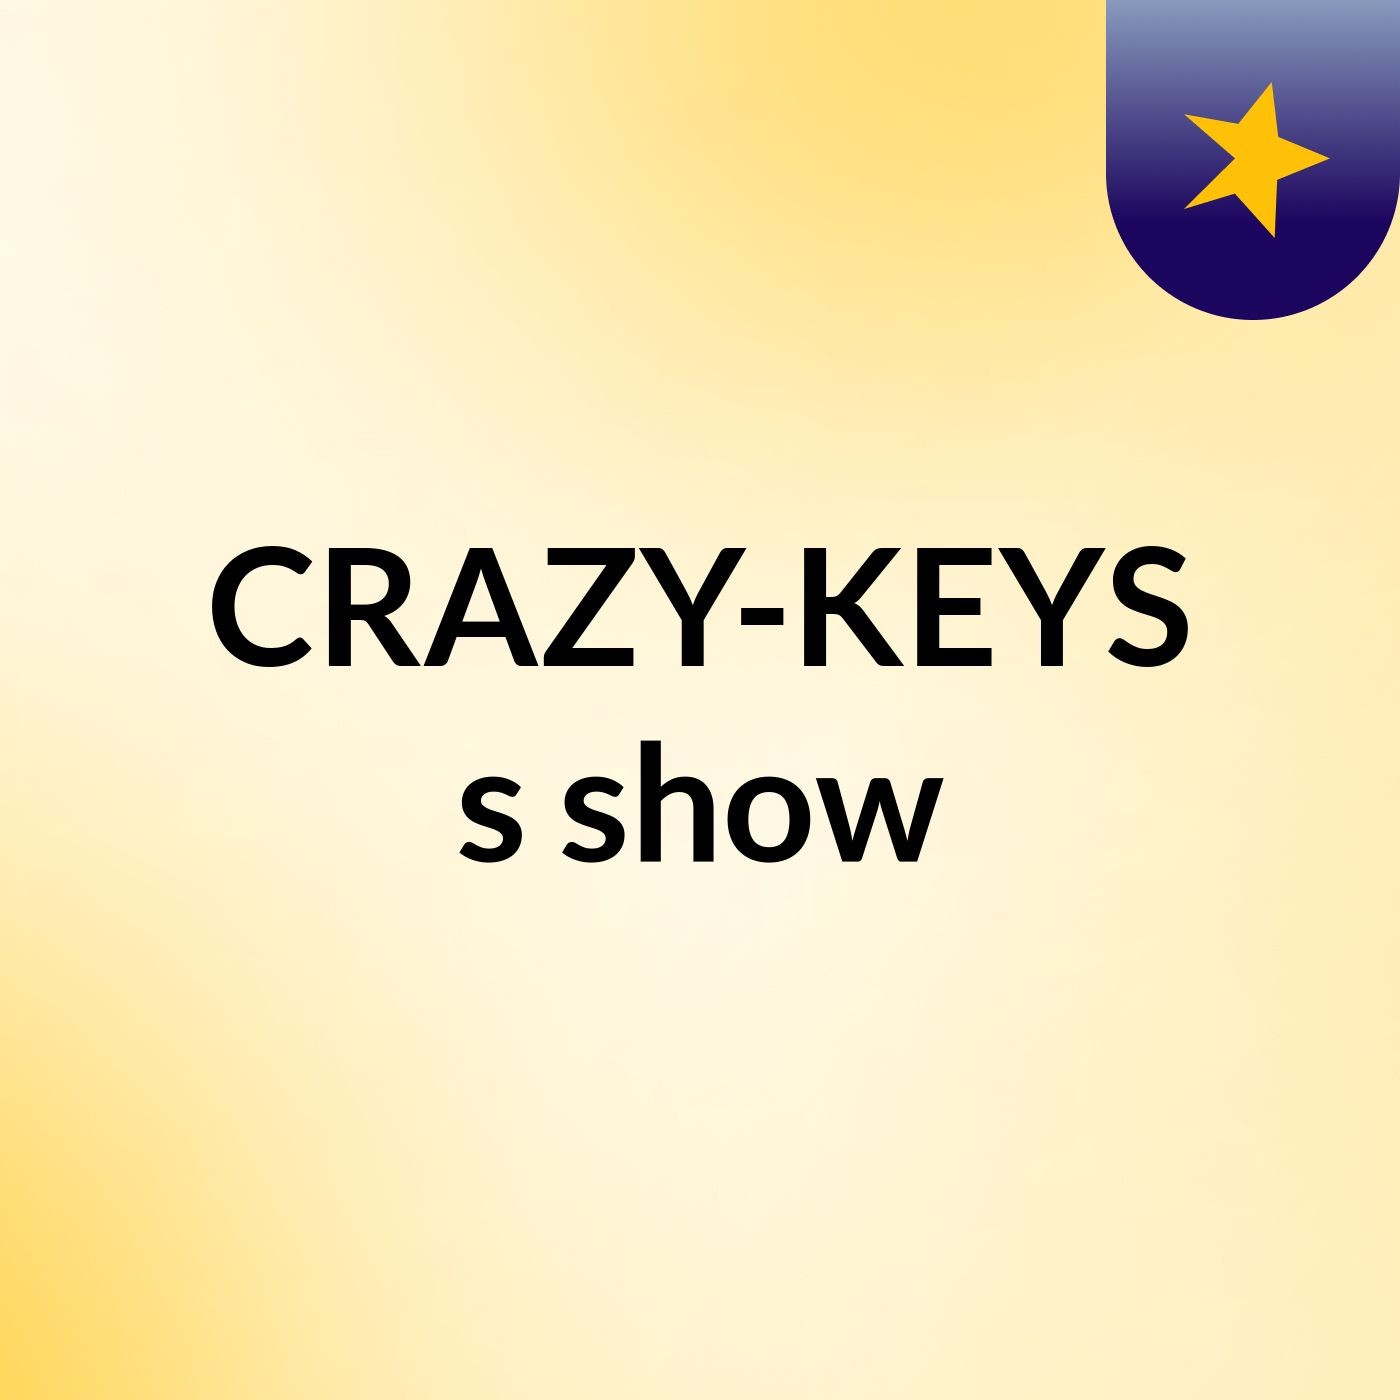 CRAZY-KEYS's show